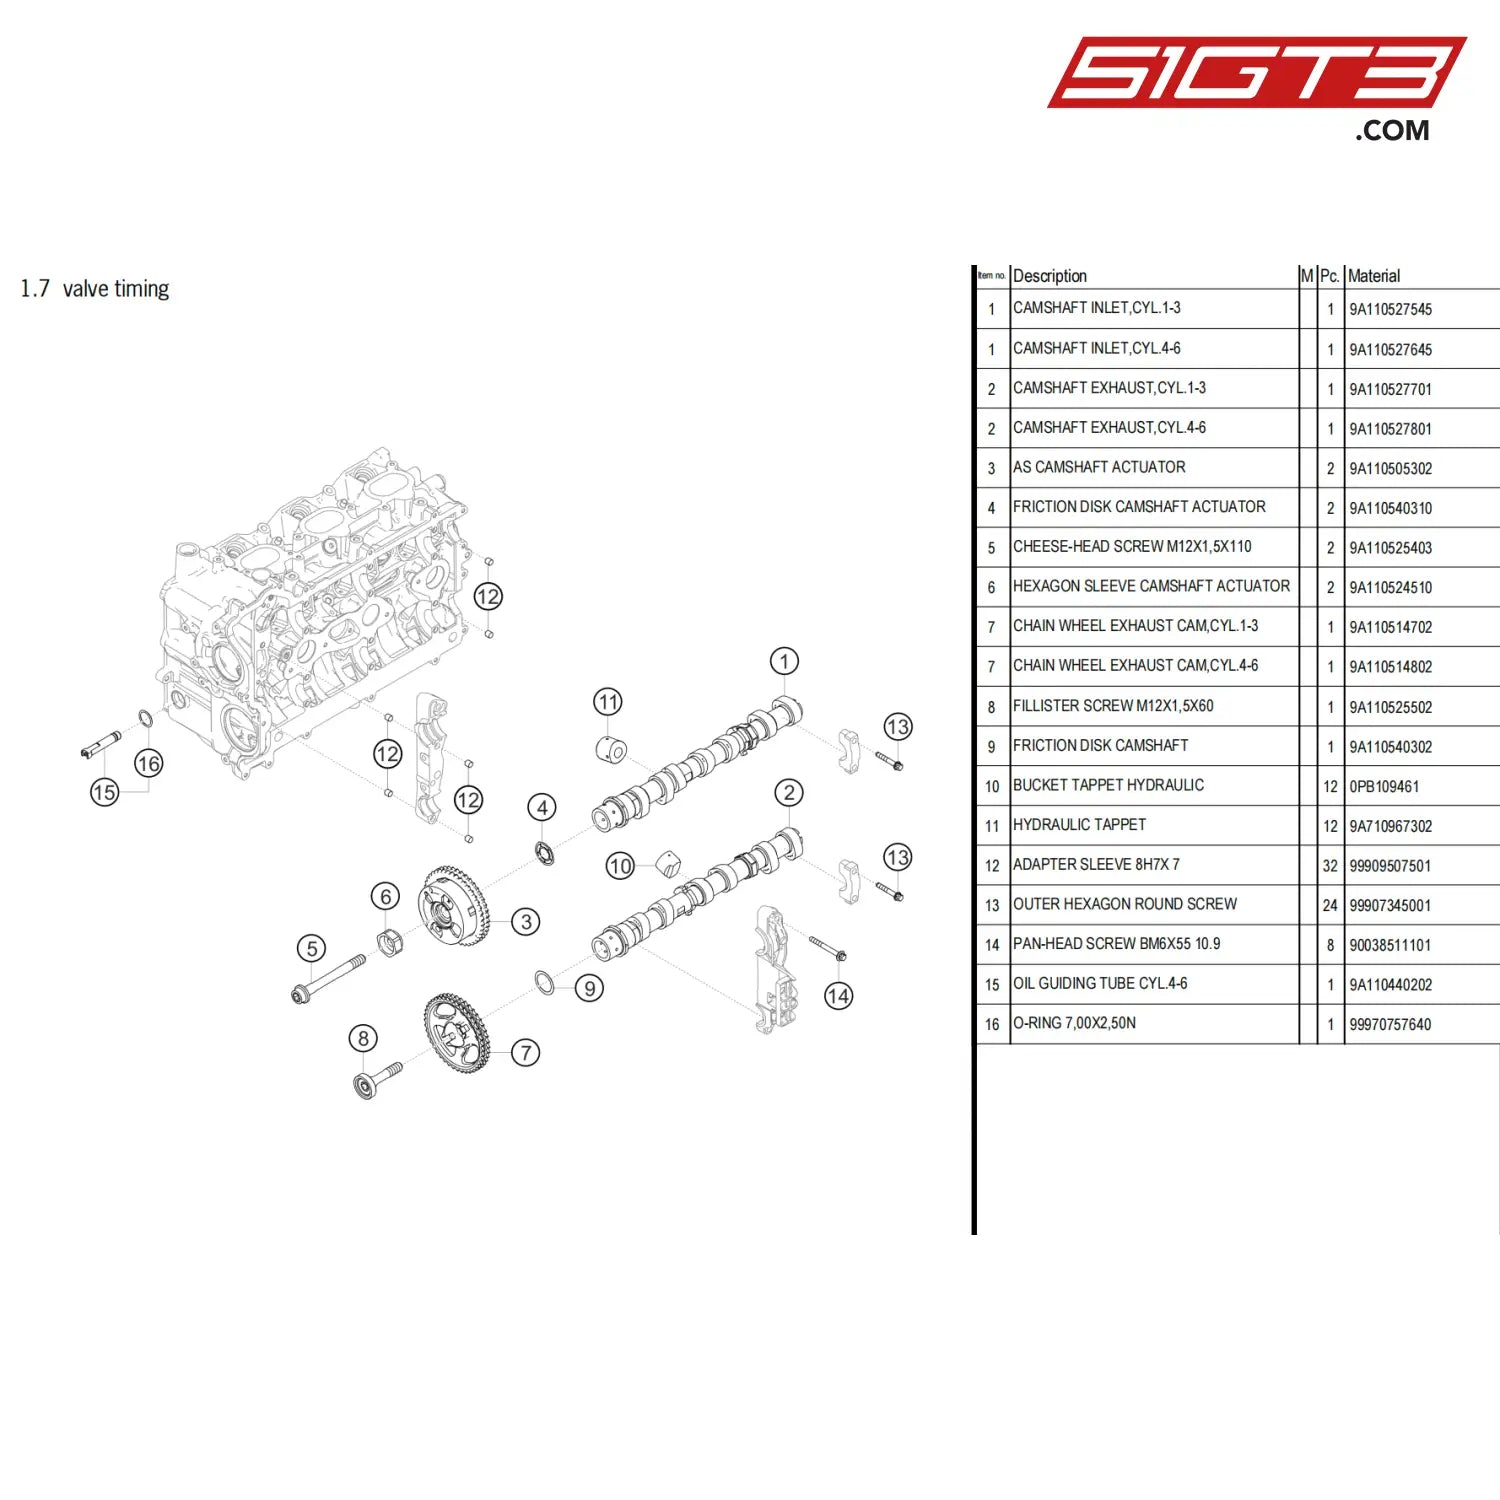 Hexagon Sleeve Camshaft Actuator - 9A110524510 [Porsche 718 Cayman Gt4 Clubsport] Valve Timing